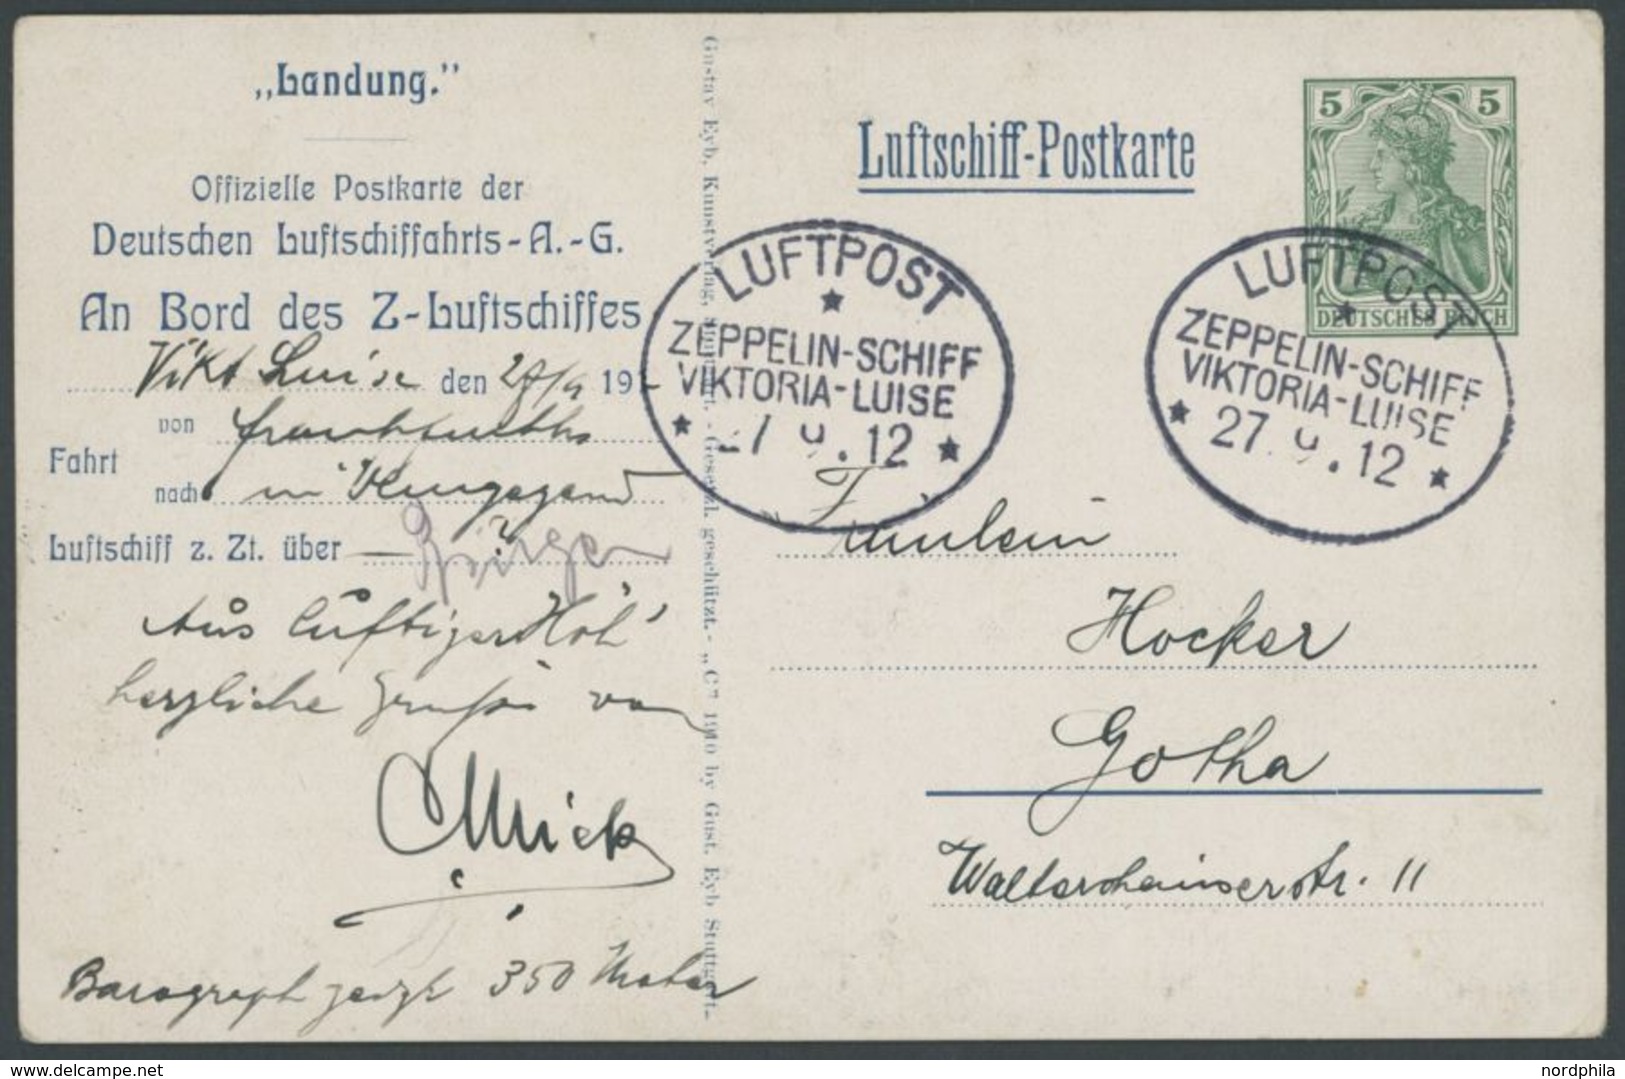 ZEPPELINPOST 4x BRIEF, 27.9.1912, Luftschiff Viktoria-Luise, Frankfurt-Rundfahrt Dokumentation Mit Original Luftschiff P - Airmail & Zeppelin